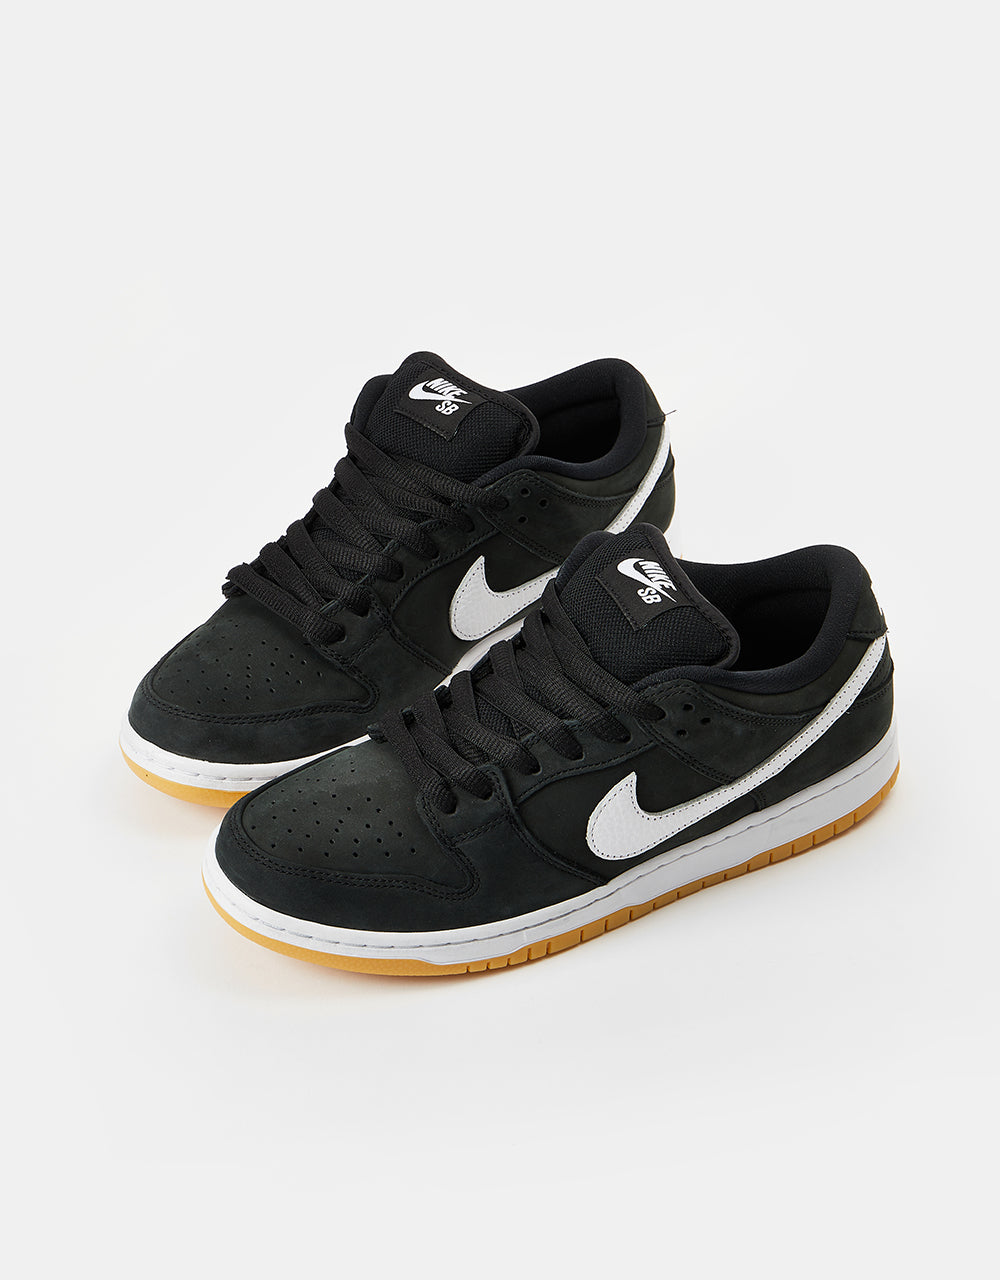 Nike SB Dunk Low Pro Premium Skate Shoes - Black/White-Black